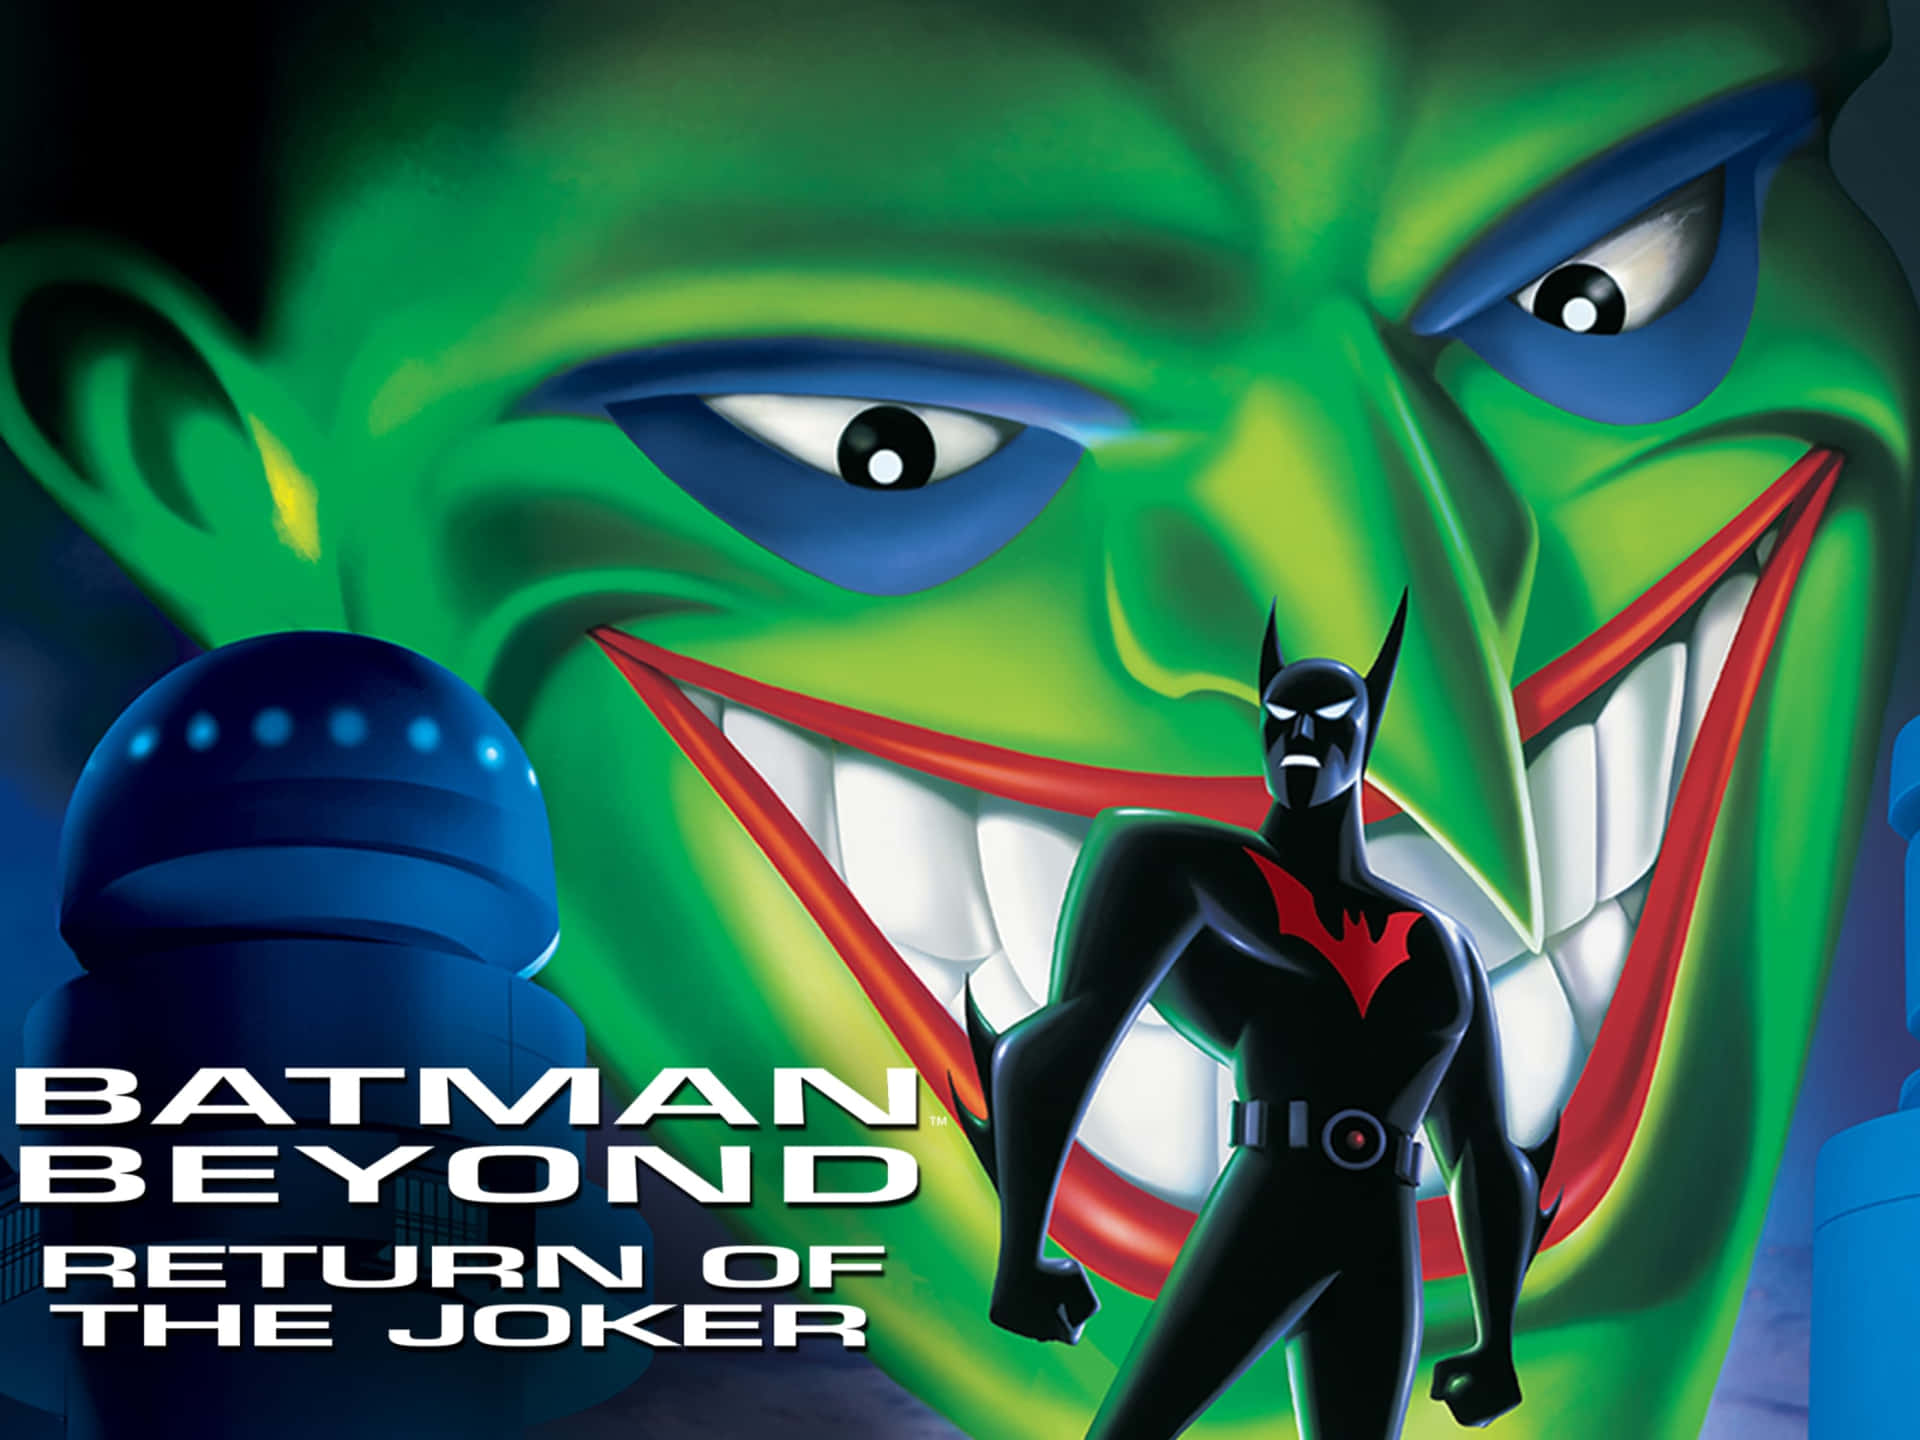 Batman Beyond and The Joker facing off in an intense scene Wallpaper